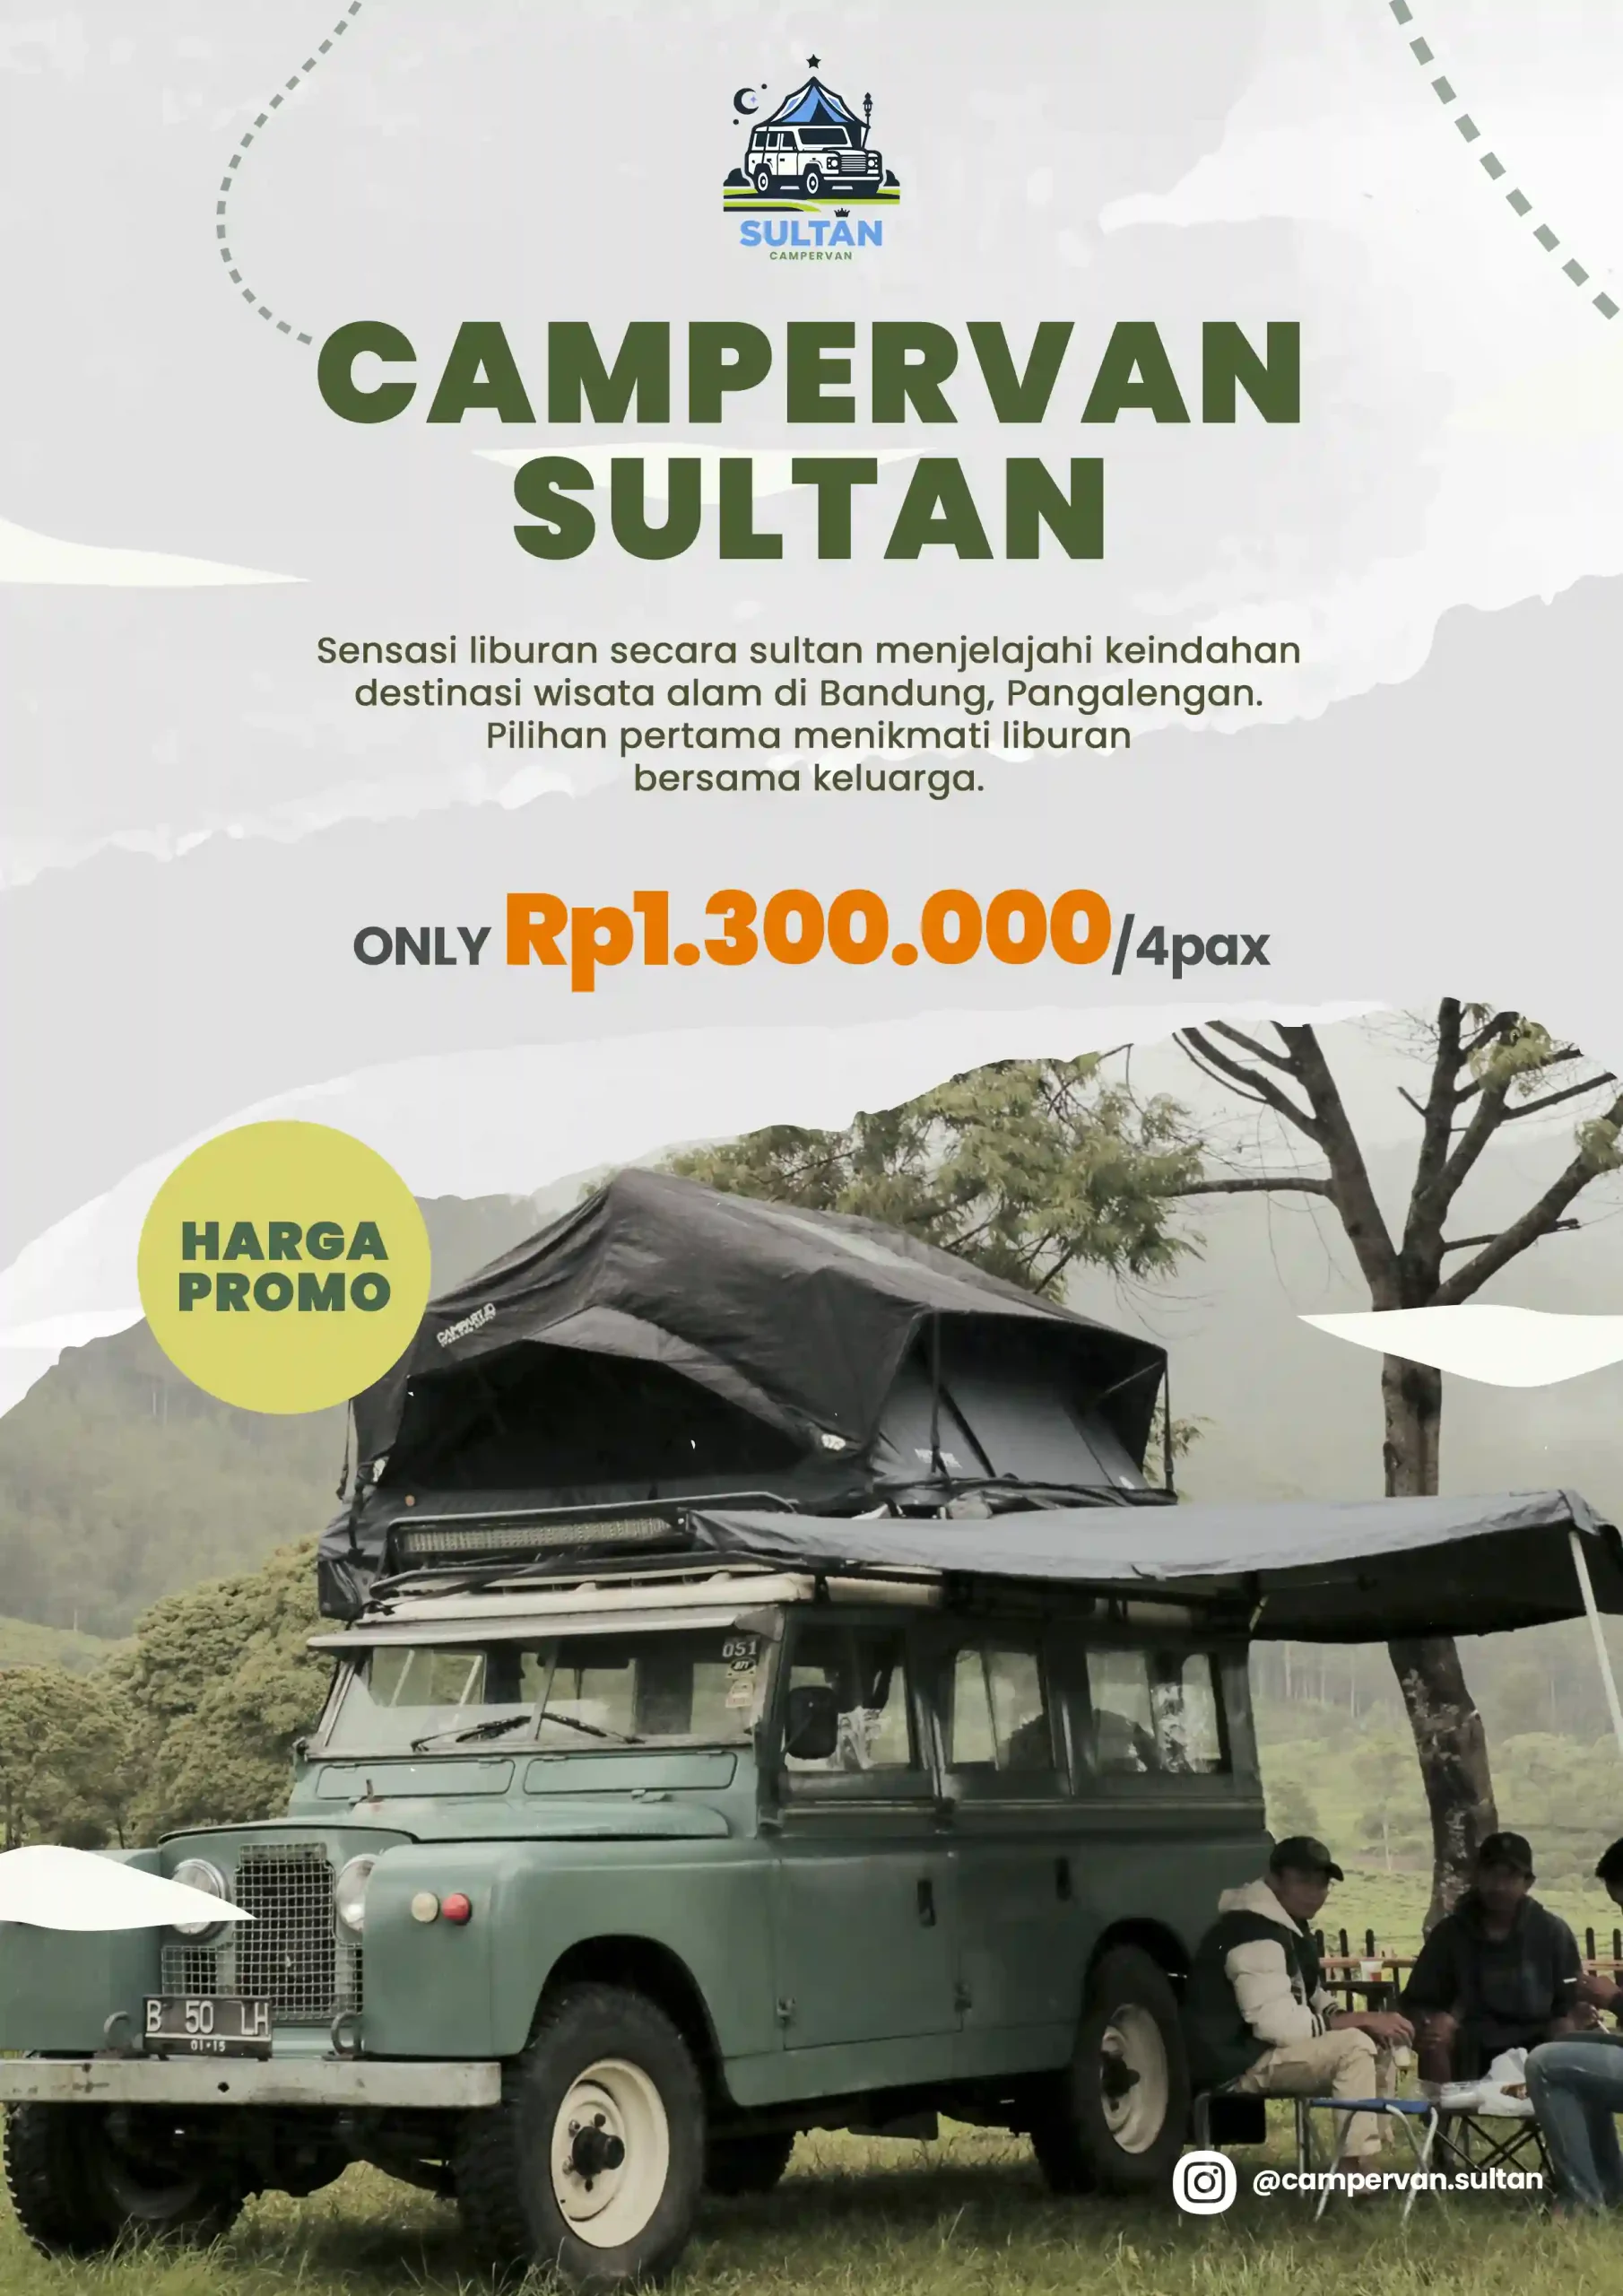 Campervan-Sultan-Promo